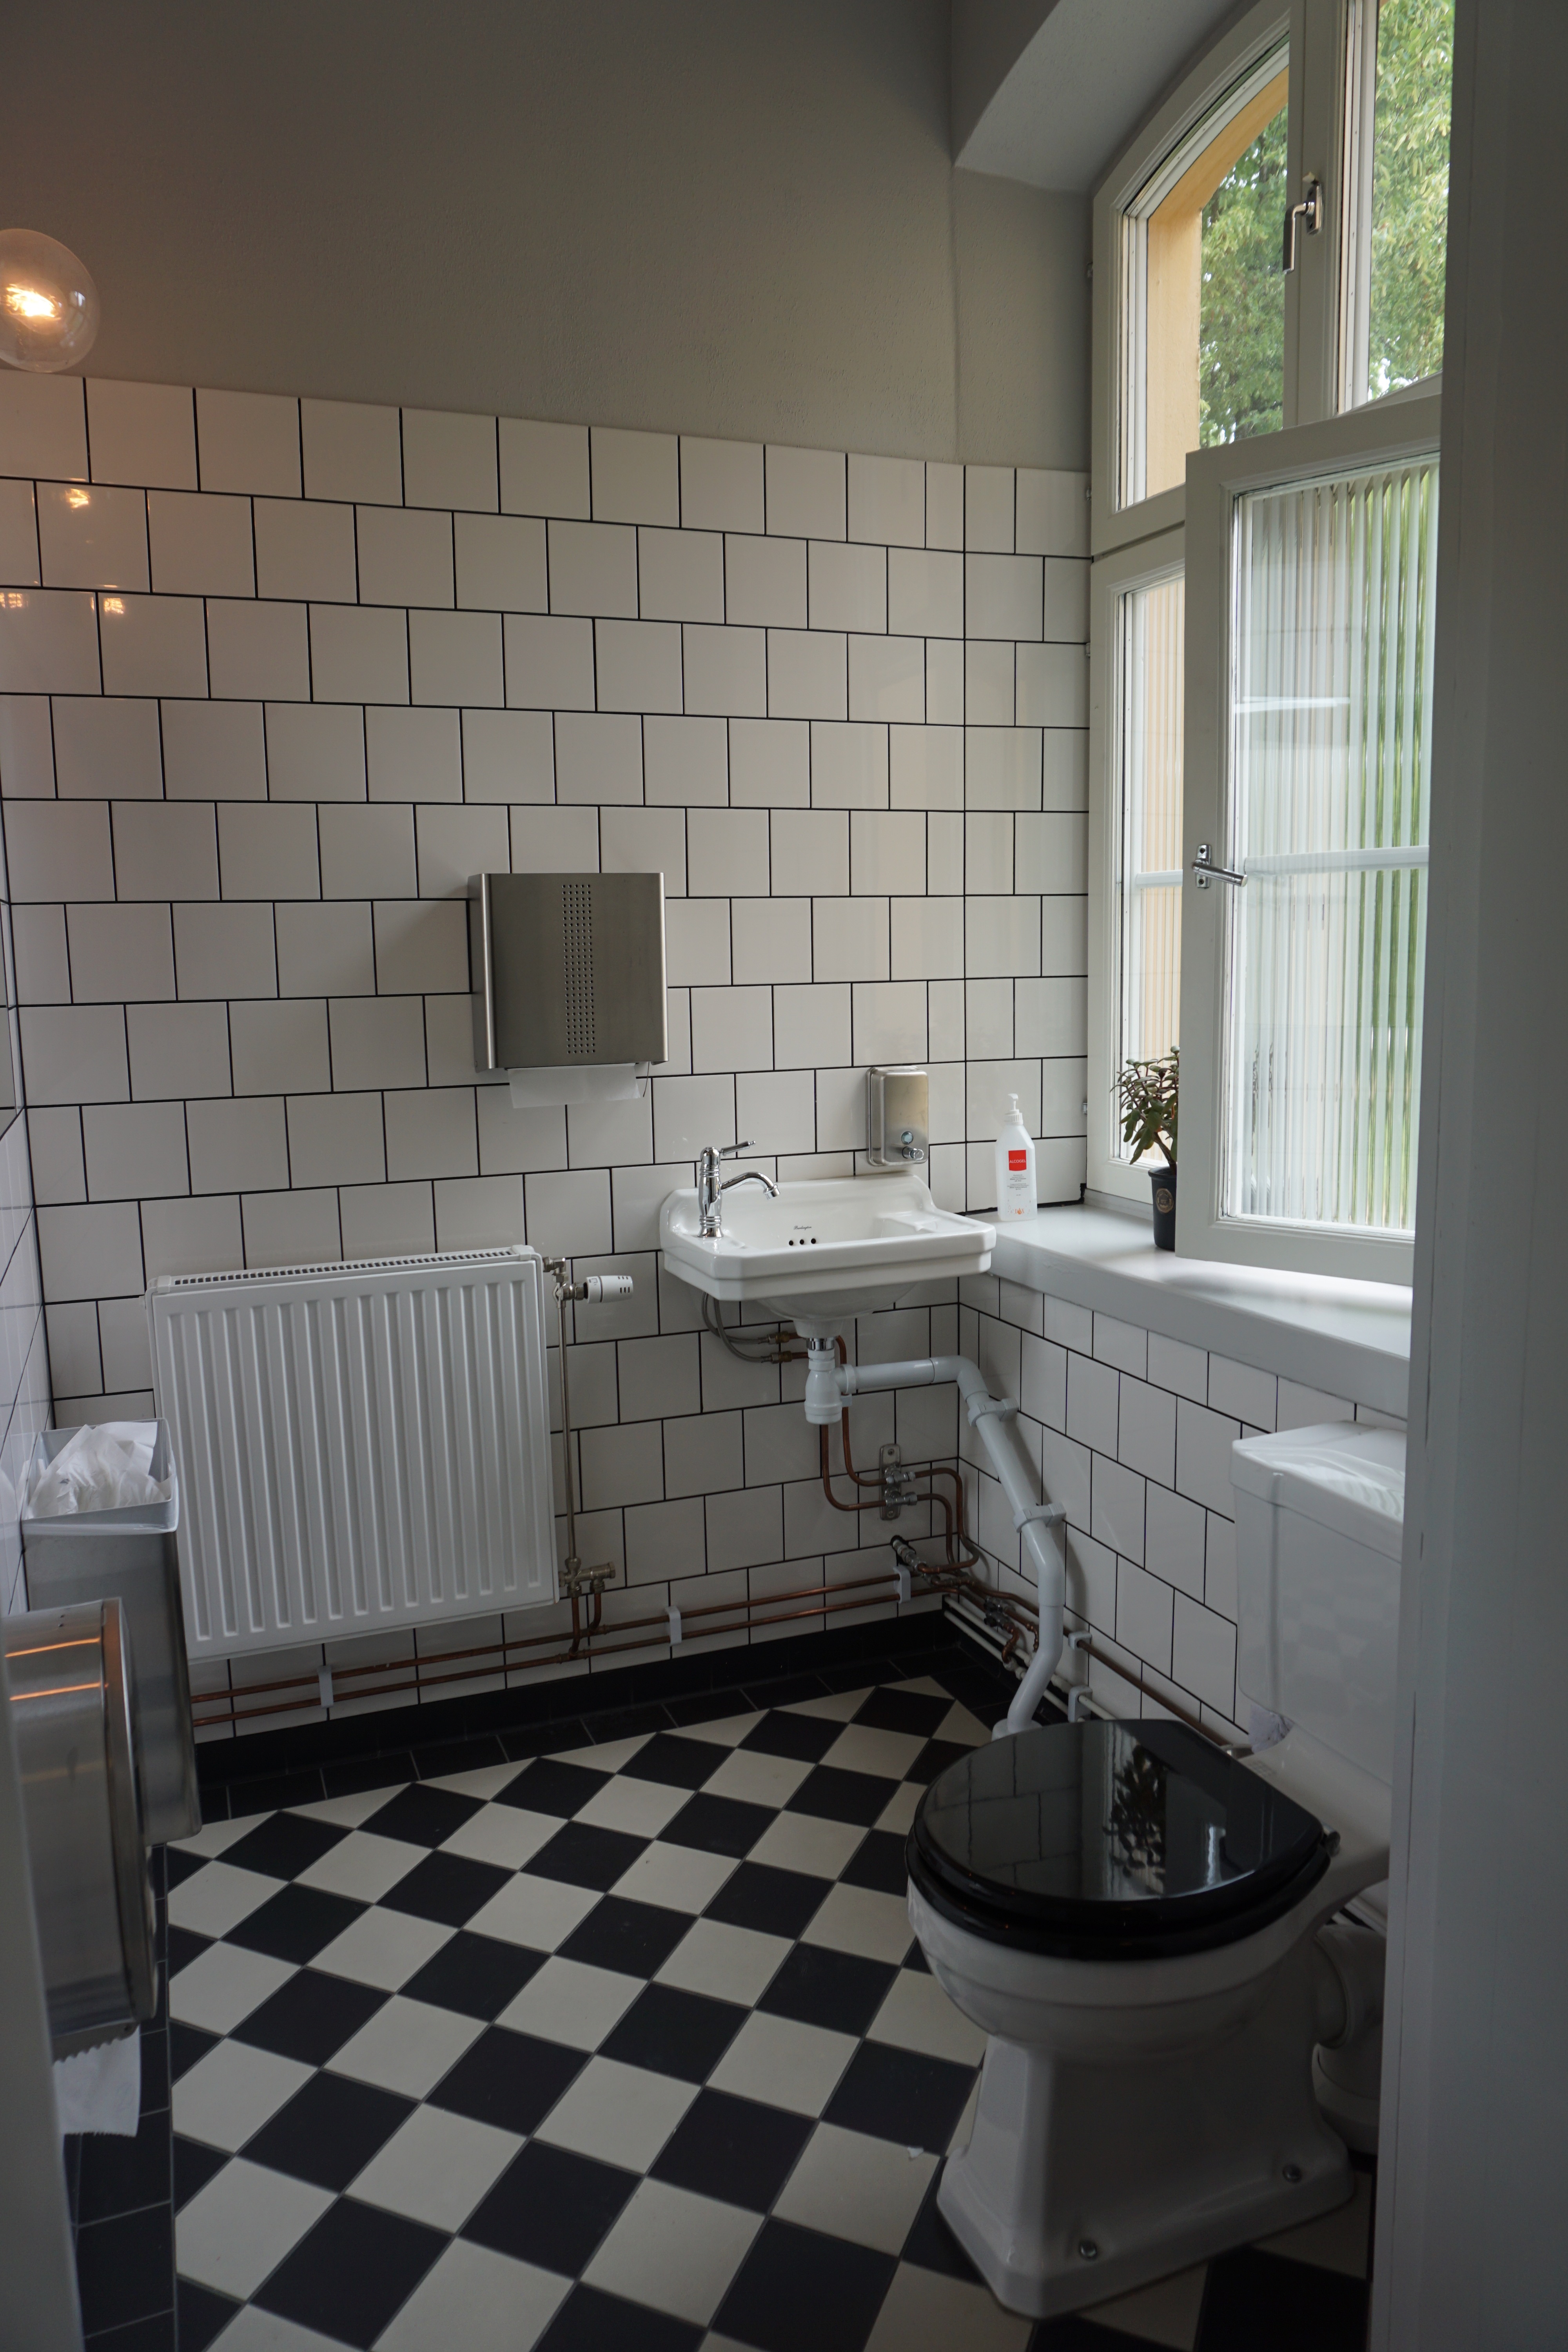 toilet at Långholmen hostel and hotel